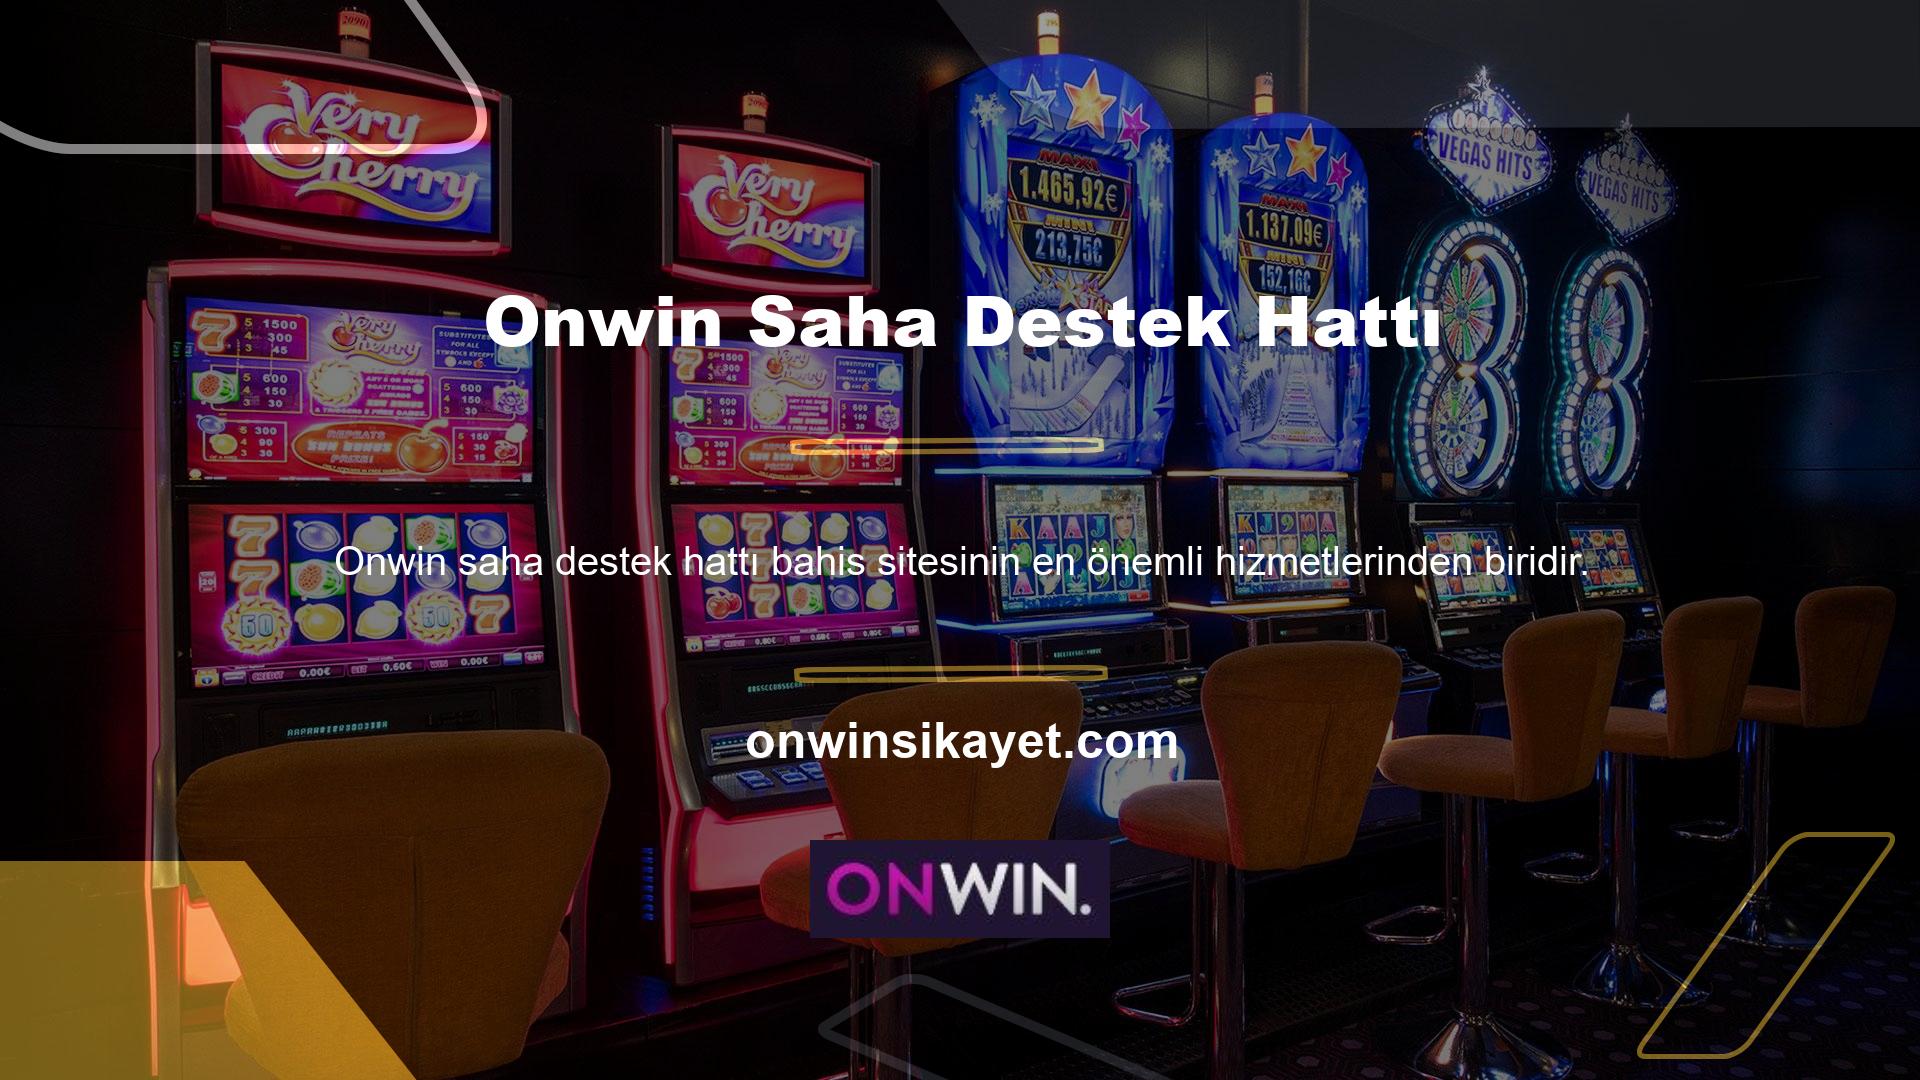 Onwin Canlı Bahis, Onwin Canlı Bahis Bülteni ile daha fazla kazanın Bir bahis sitesinden daha fazla para kazanmak her casino severin hayalidir, ancak iyi standartlara sahip bir site seçin Bunu yapmak kazanma şansınızı artırır